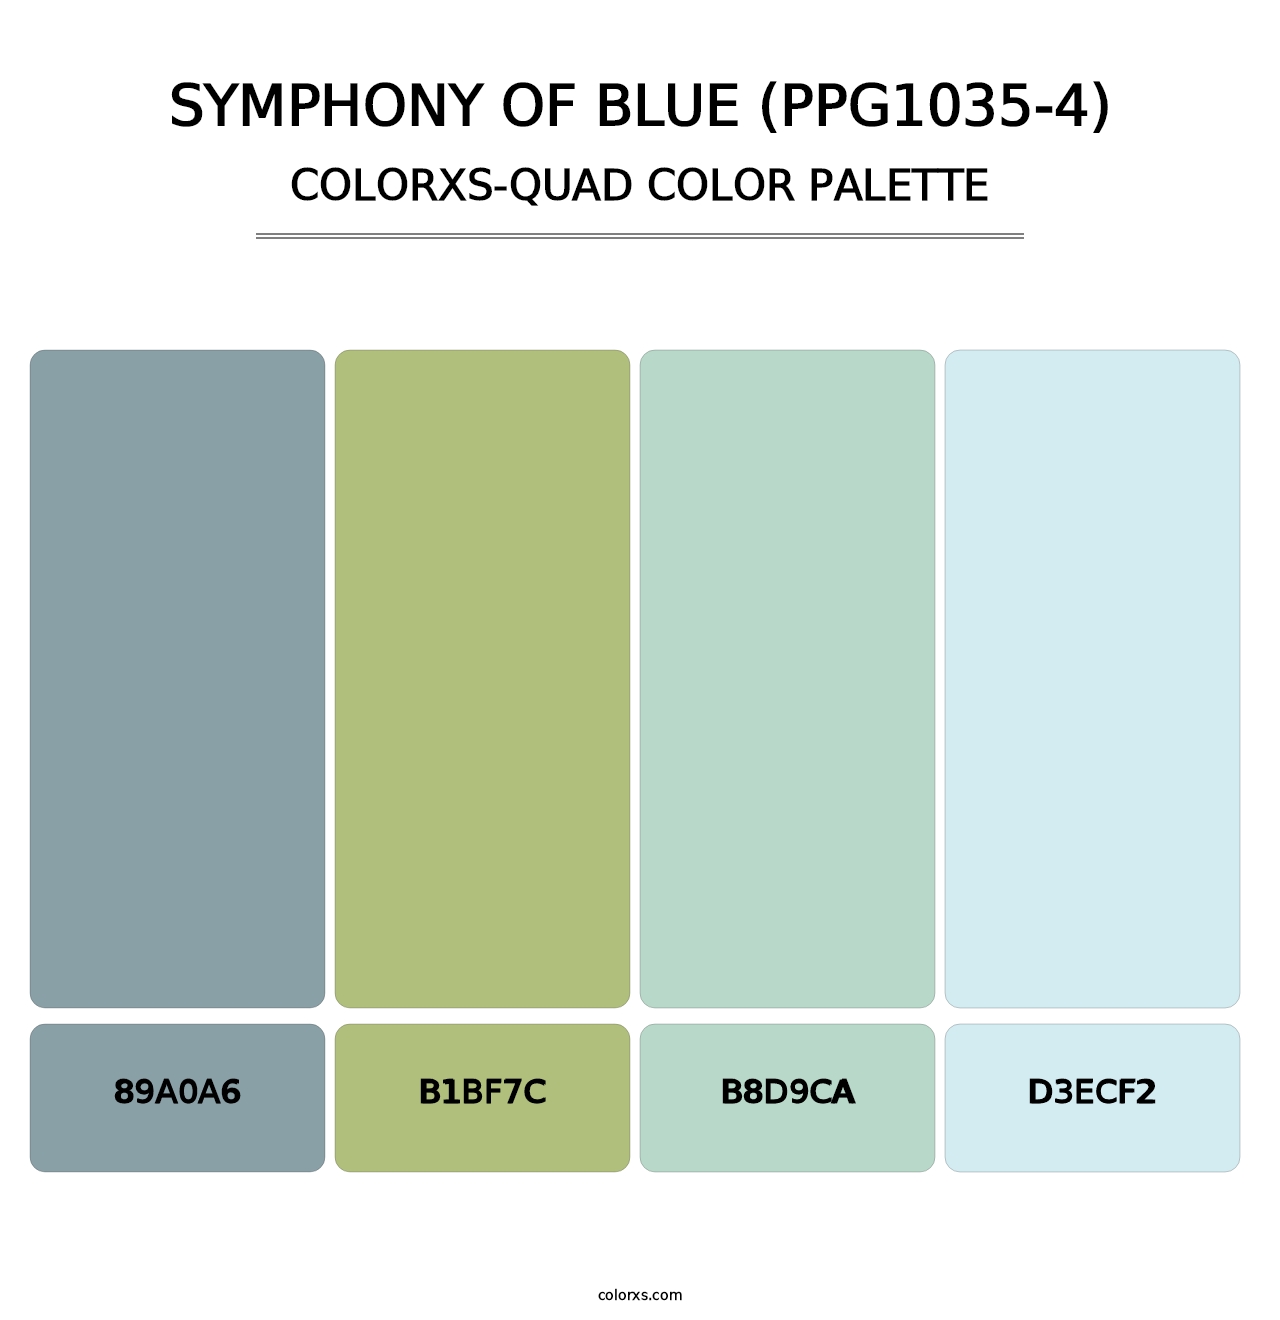 Symphony Of Blue (PPG1035-4) - Colorxs Quad Palette